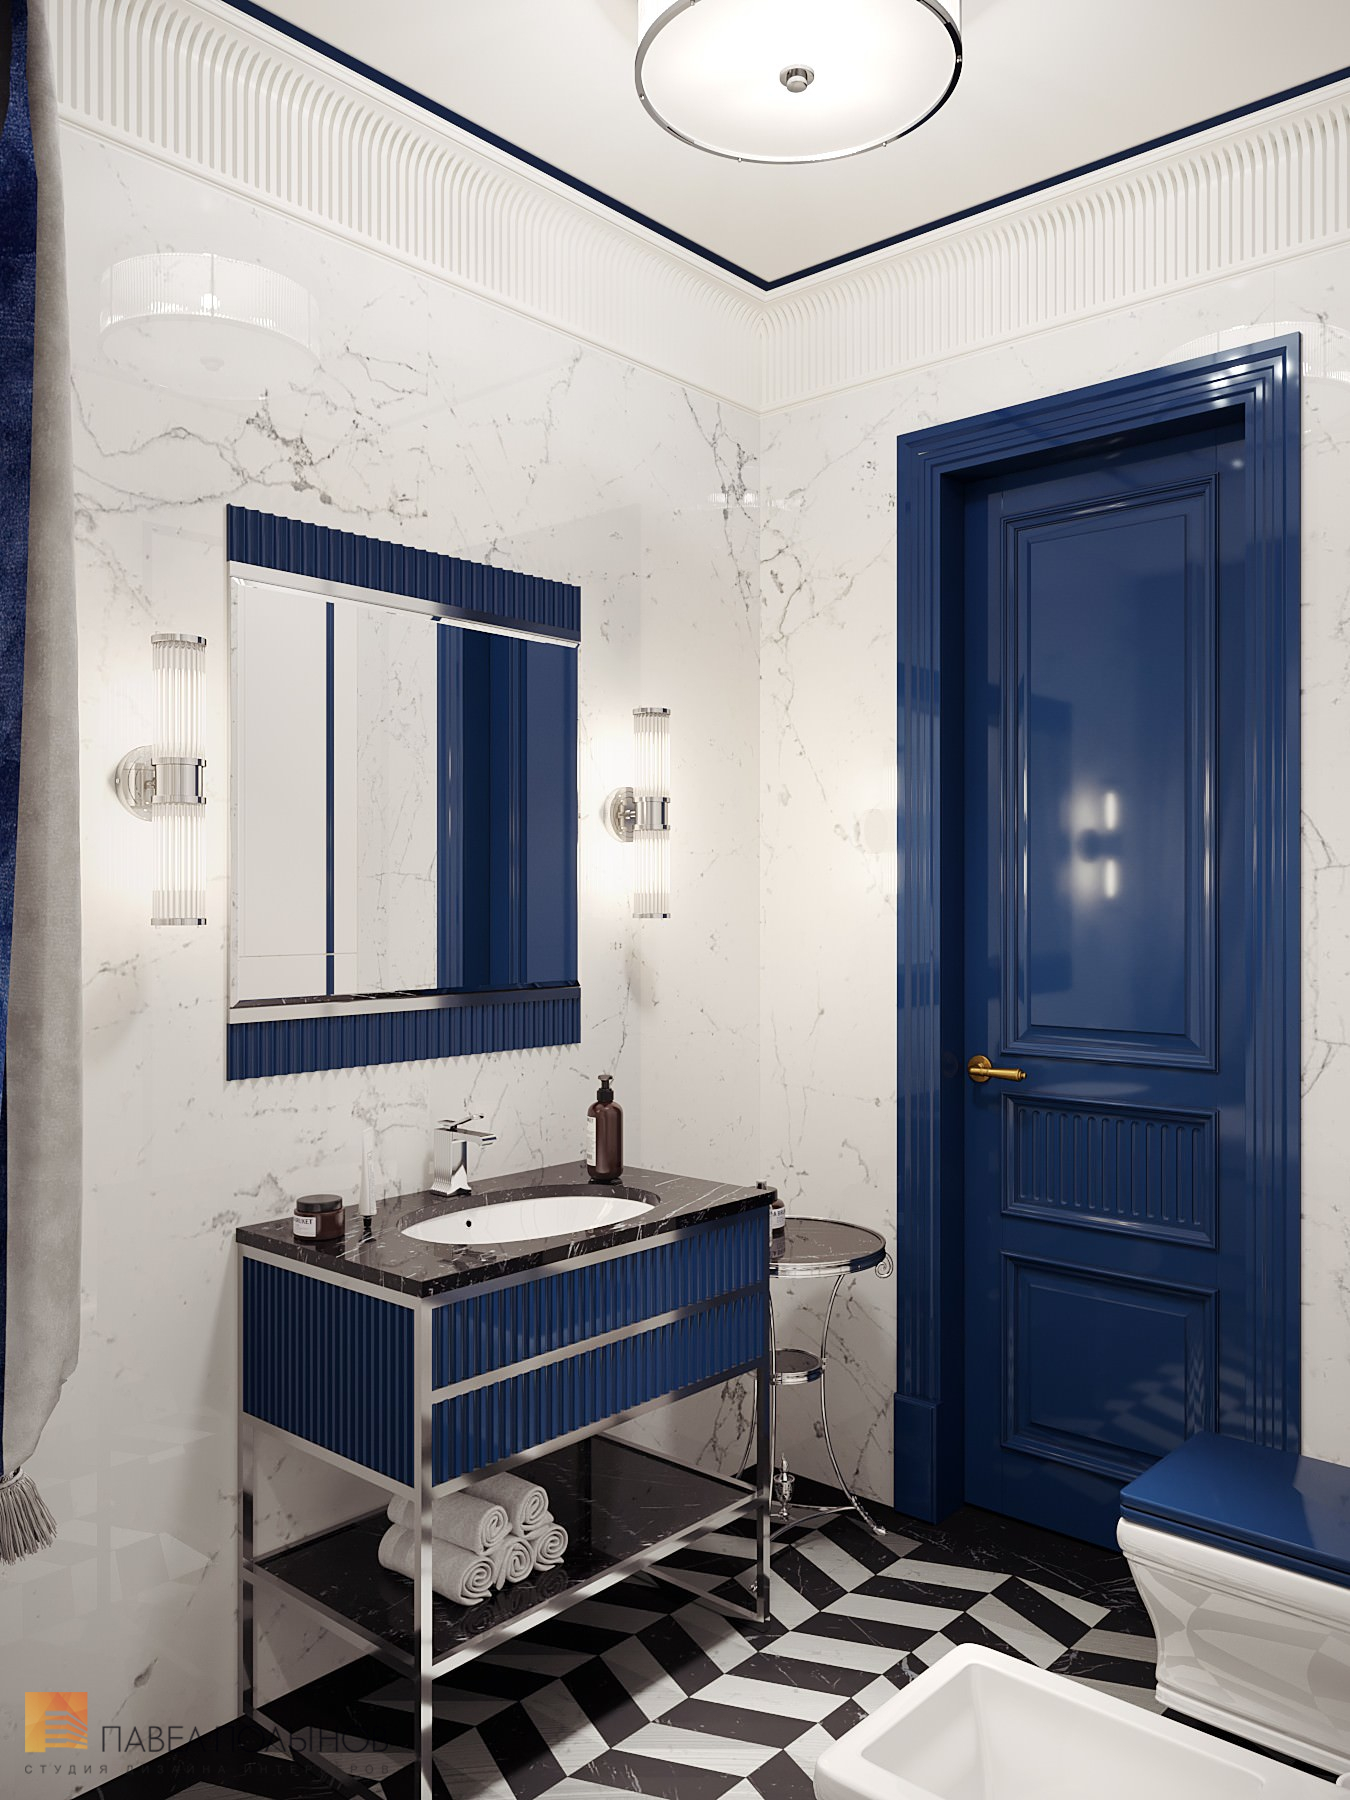 Фото дизайн интерьера ванной комнаты из проекта «Интерьер квартиры в стиле английской классики, ЖК «Патриот», 124 кв.м.»